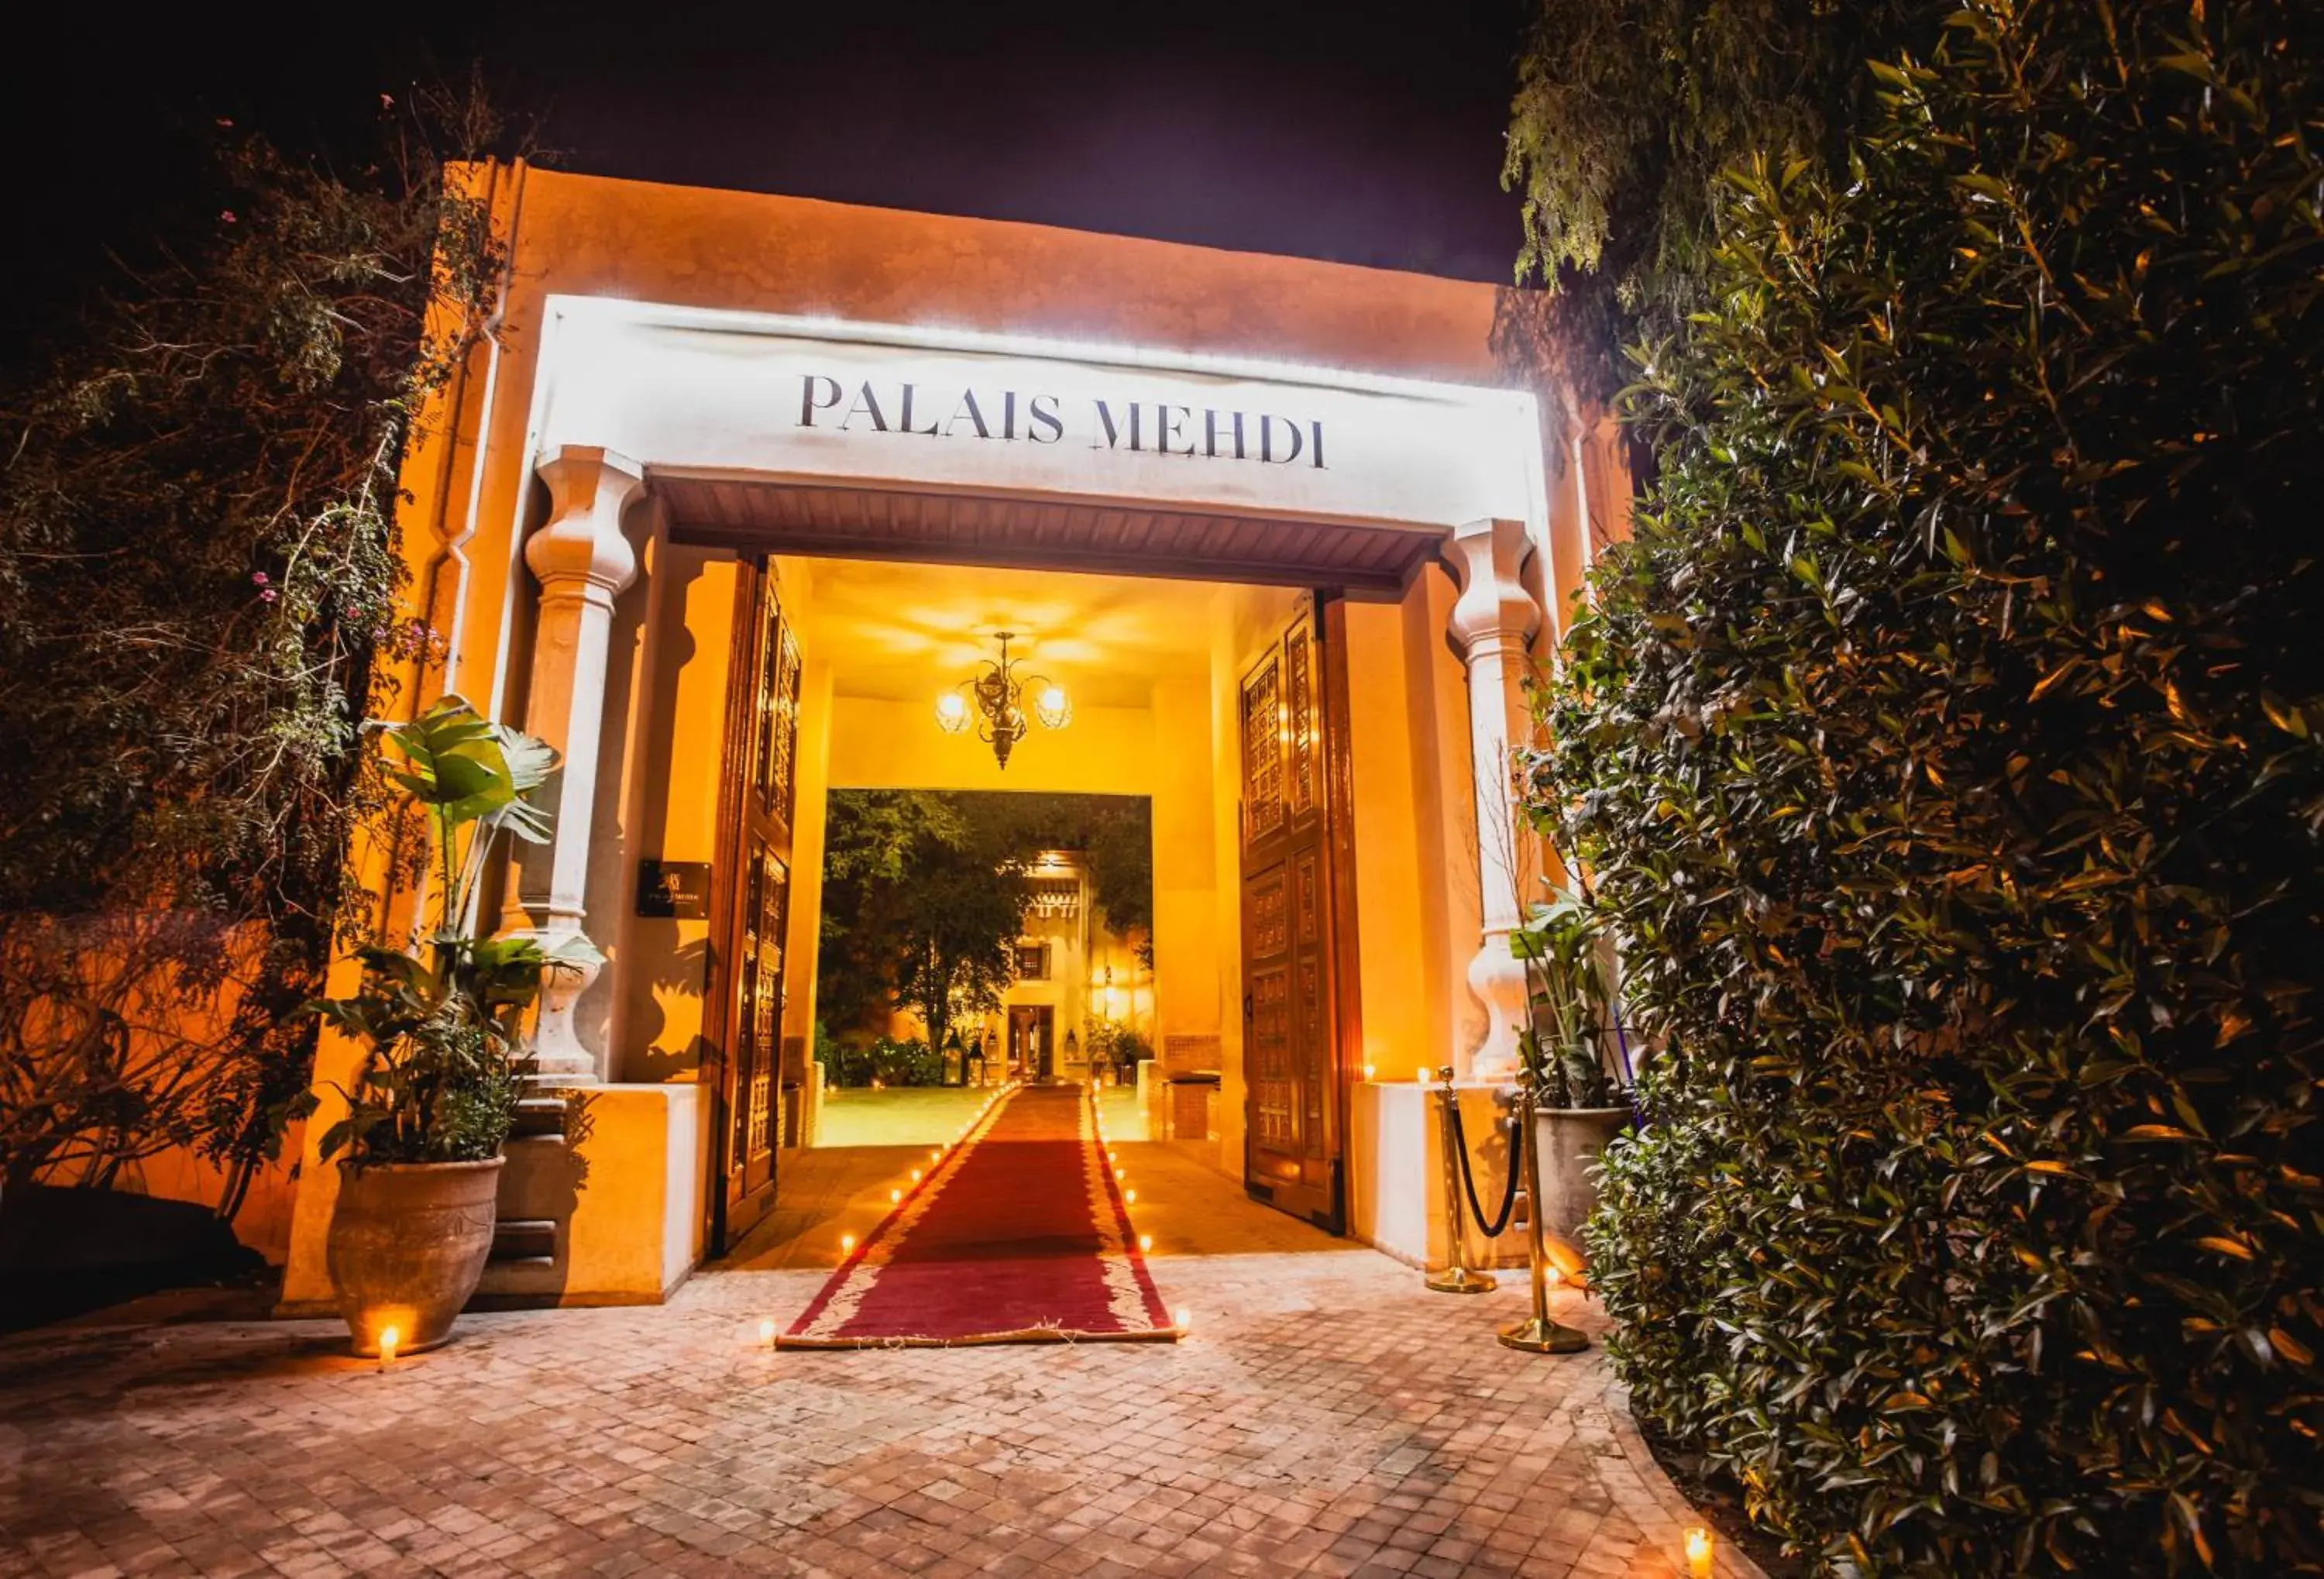 Facade/entrance in Palais Mehdi